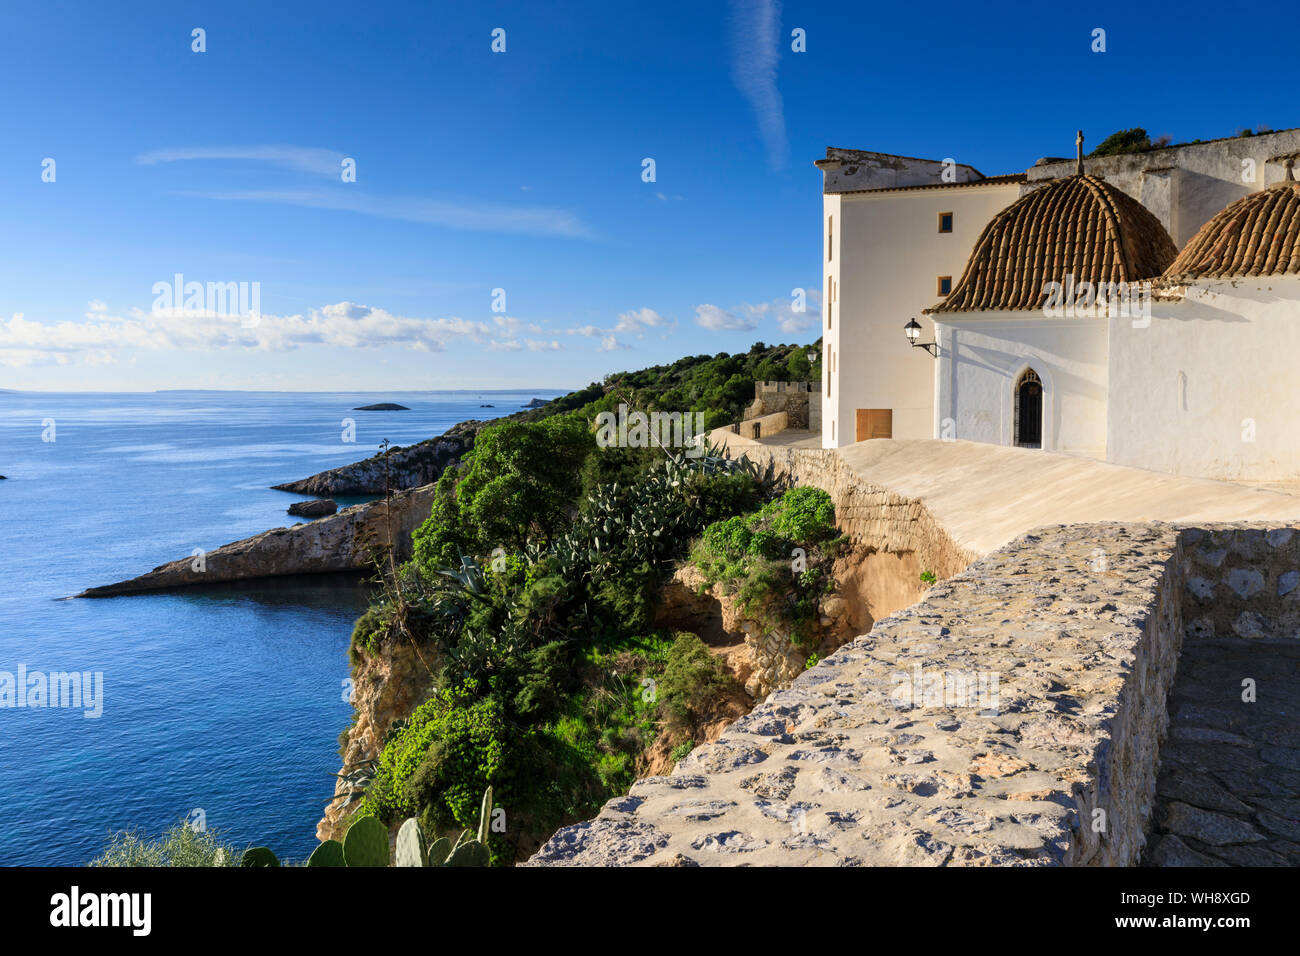 Vista costiera da bastioni e mura di Dalt Vila città vecchia, UNESCO, imbiancato la chiesa, la città di Ibiza, Isole Baleari, Spagna, Mediterranea Foto Stock